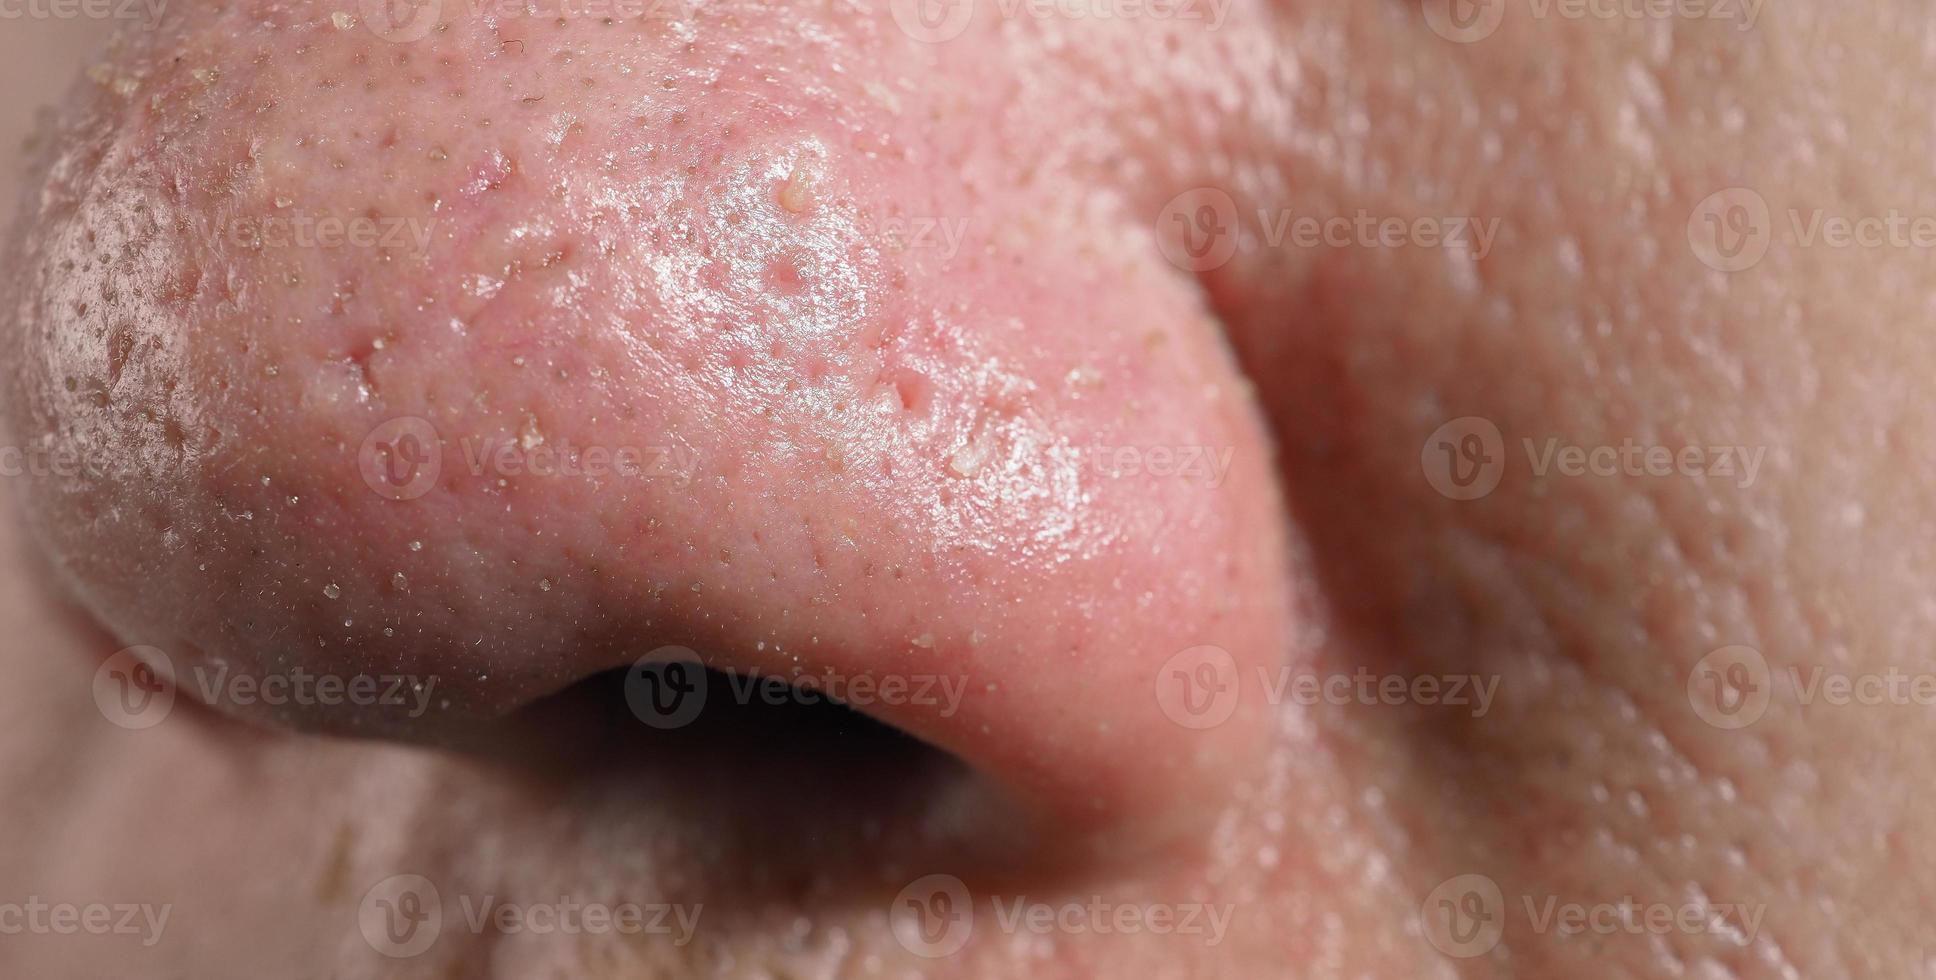 acne e poros problemáticos. espinhas brancas e cravos dos poros do nariz. foto